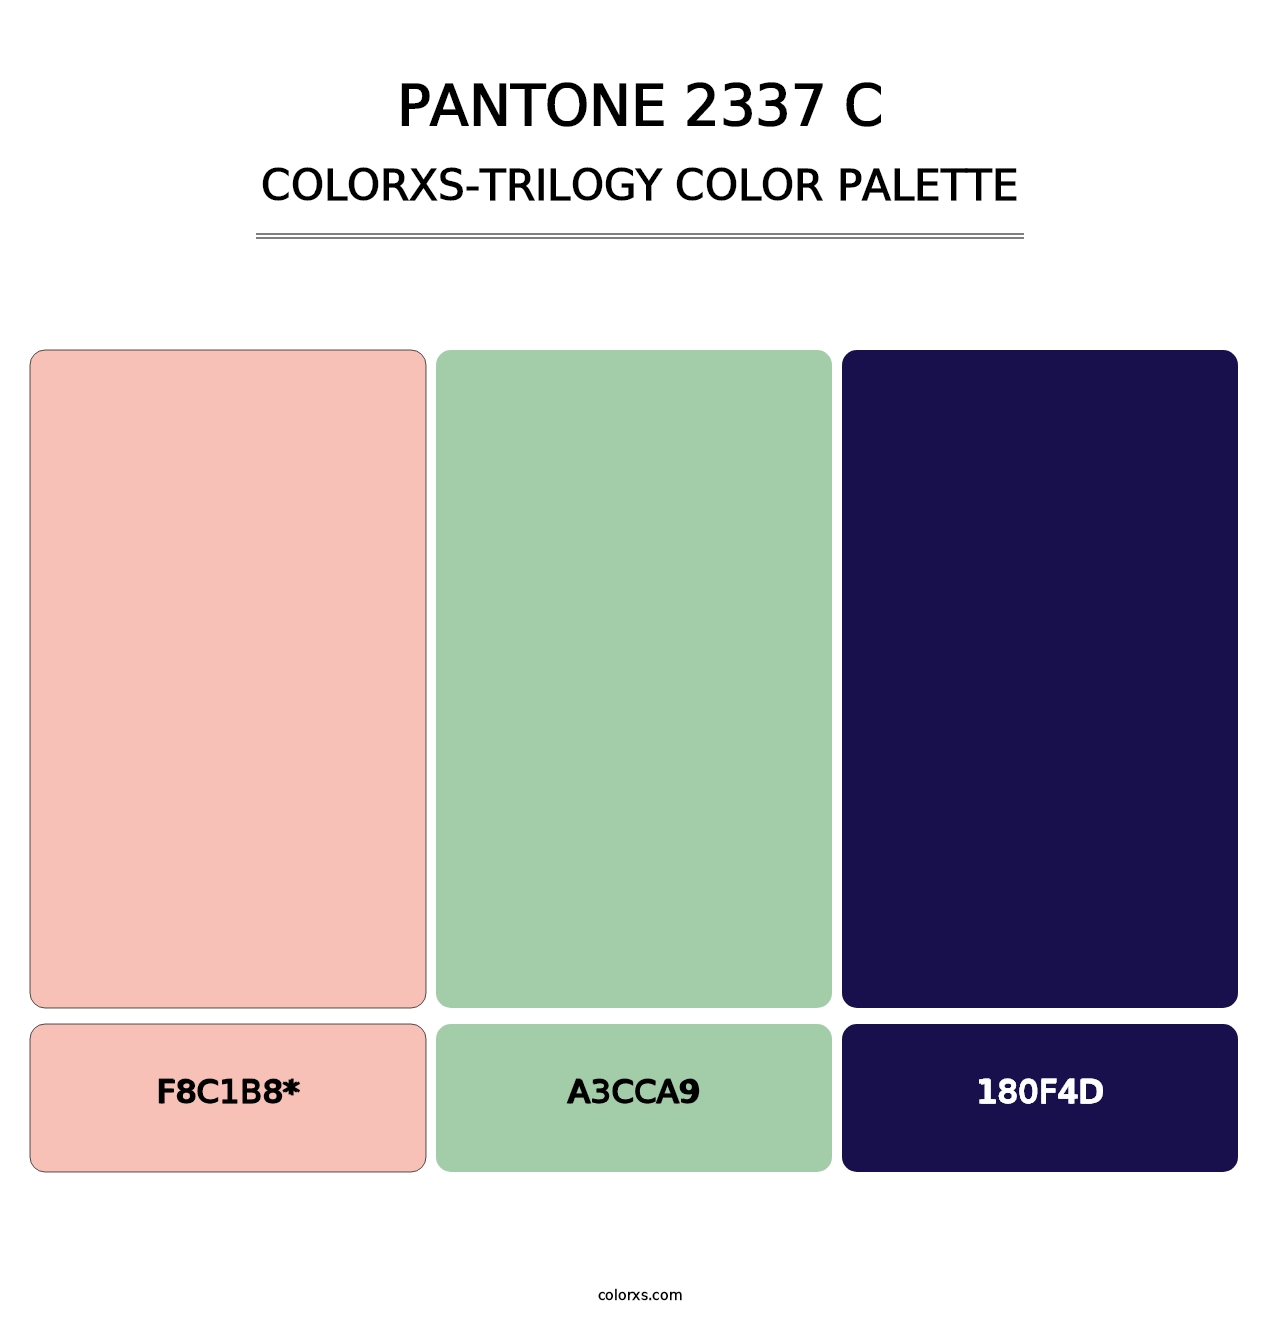 PANTONE 2337 C - Colorxs Trilogy Palette